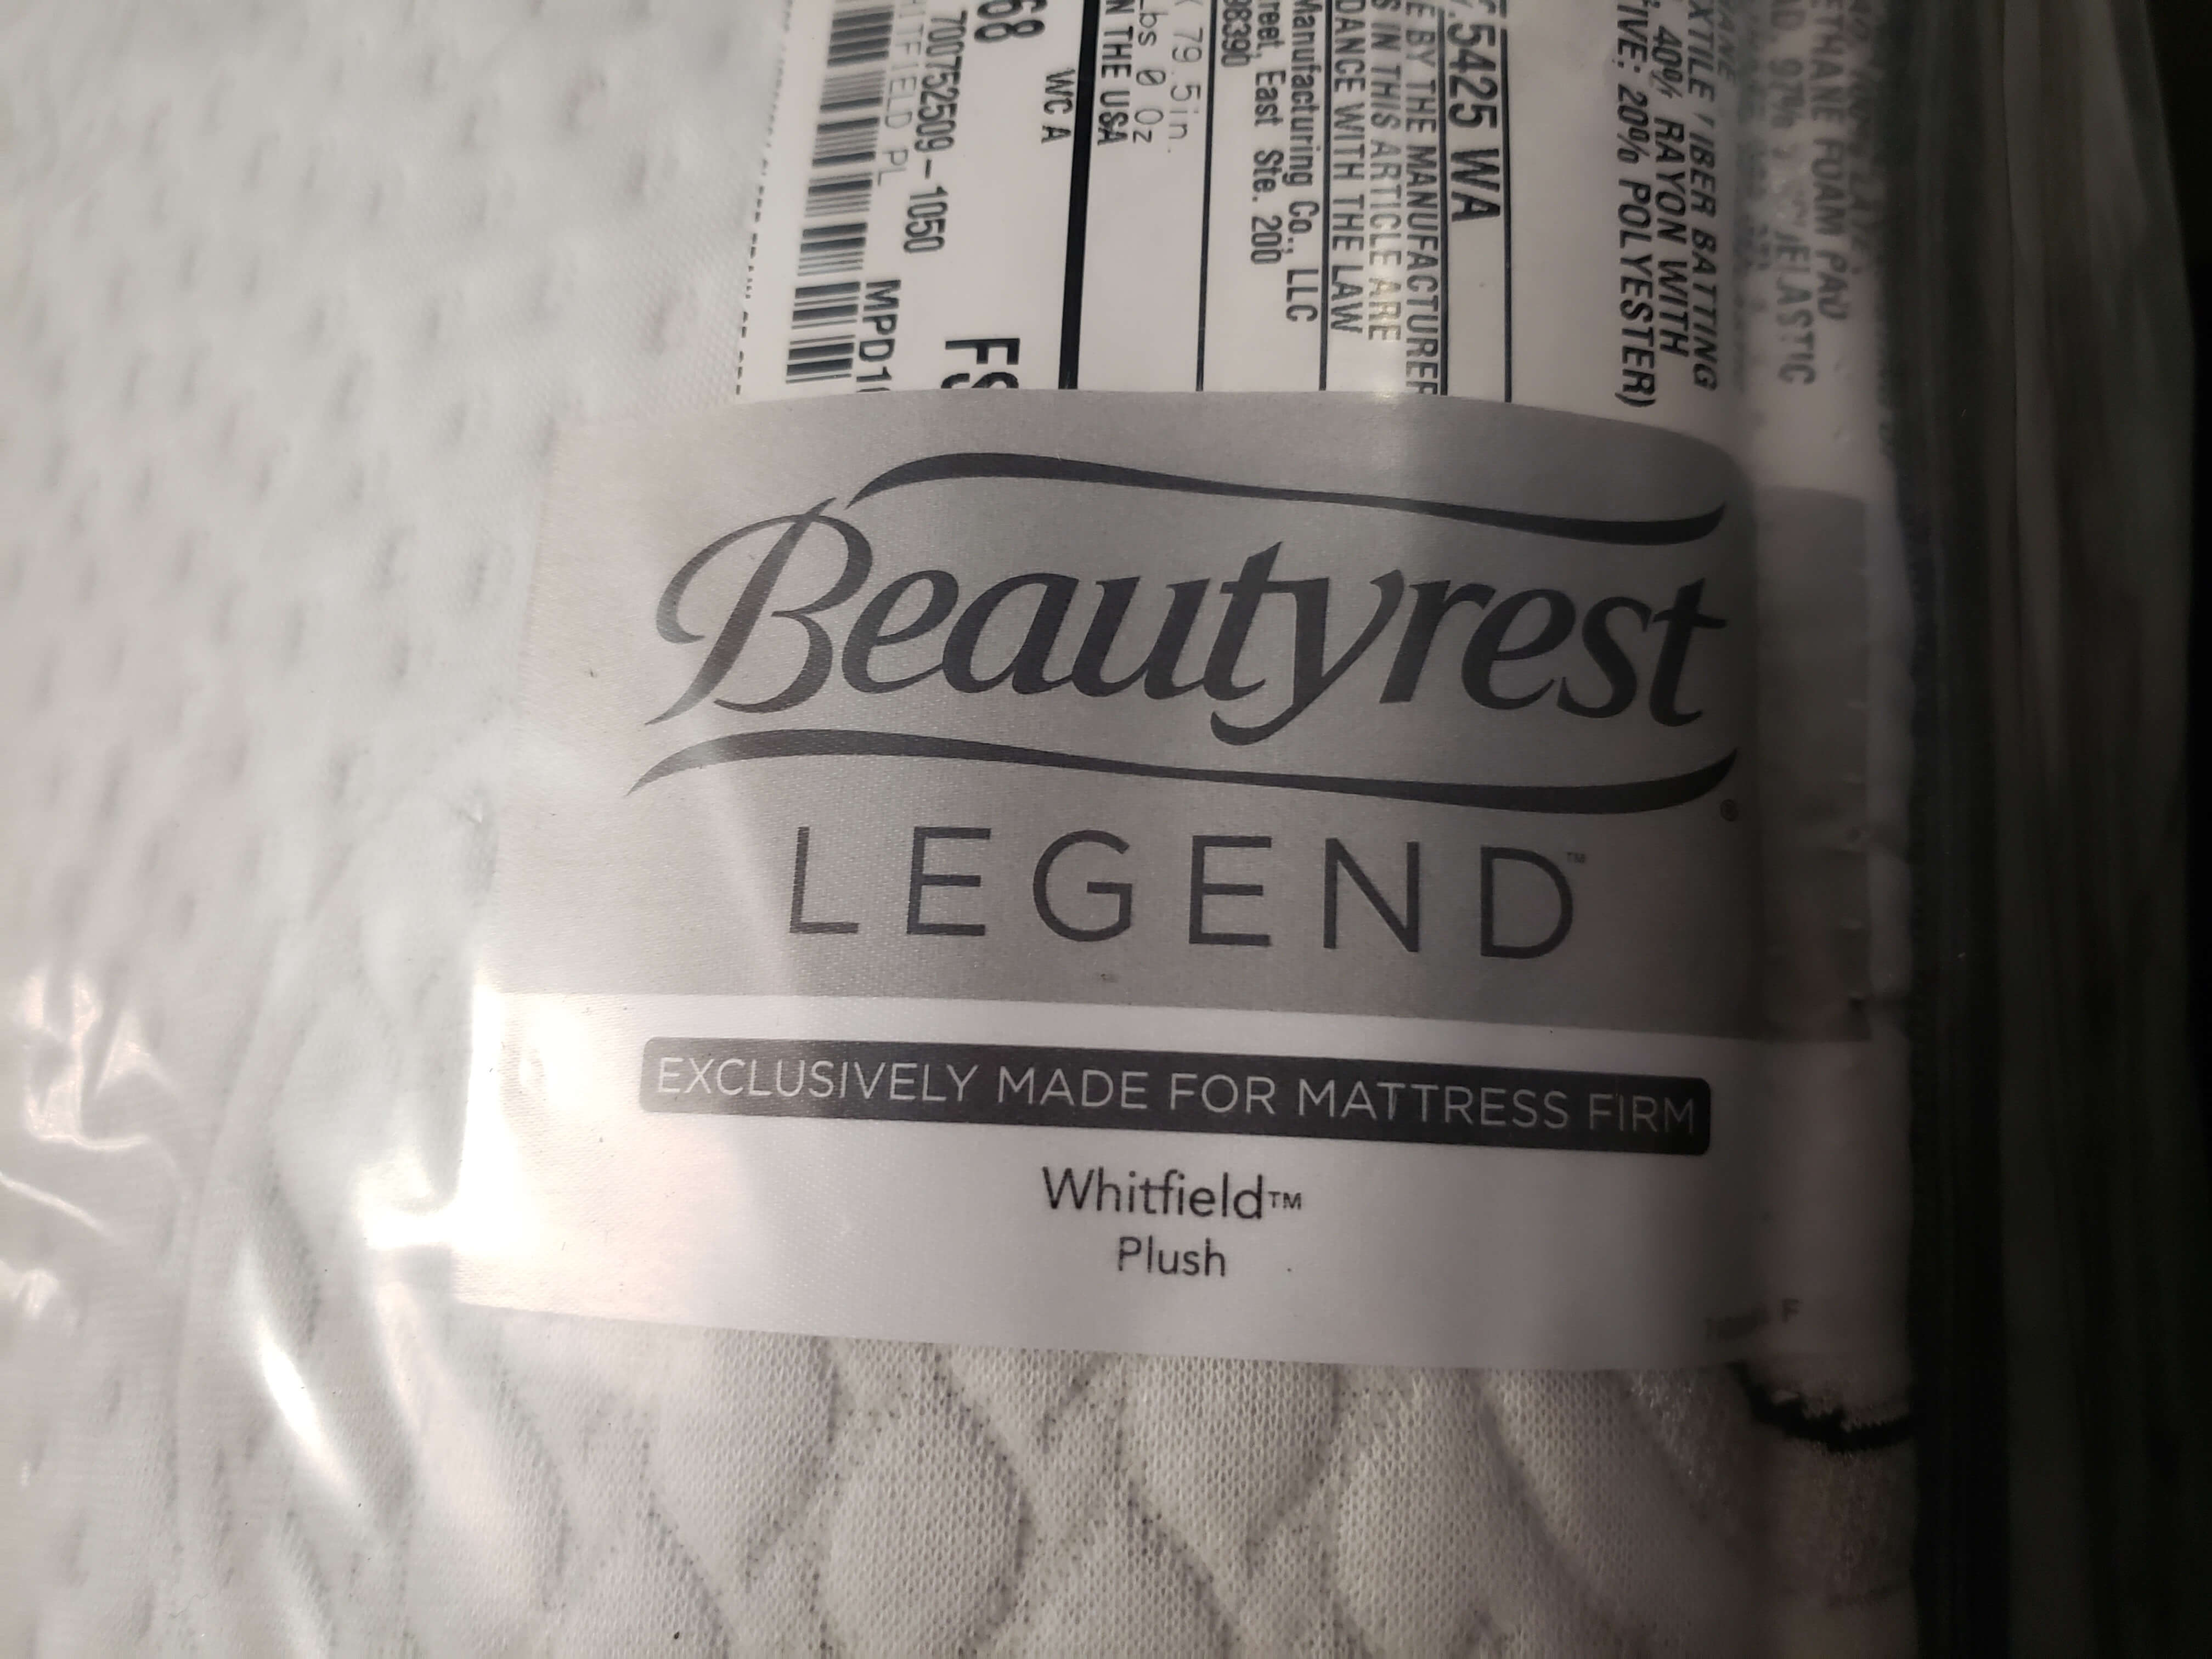 beautyrest legend mattress and spring